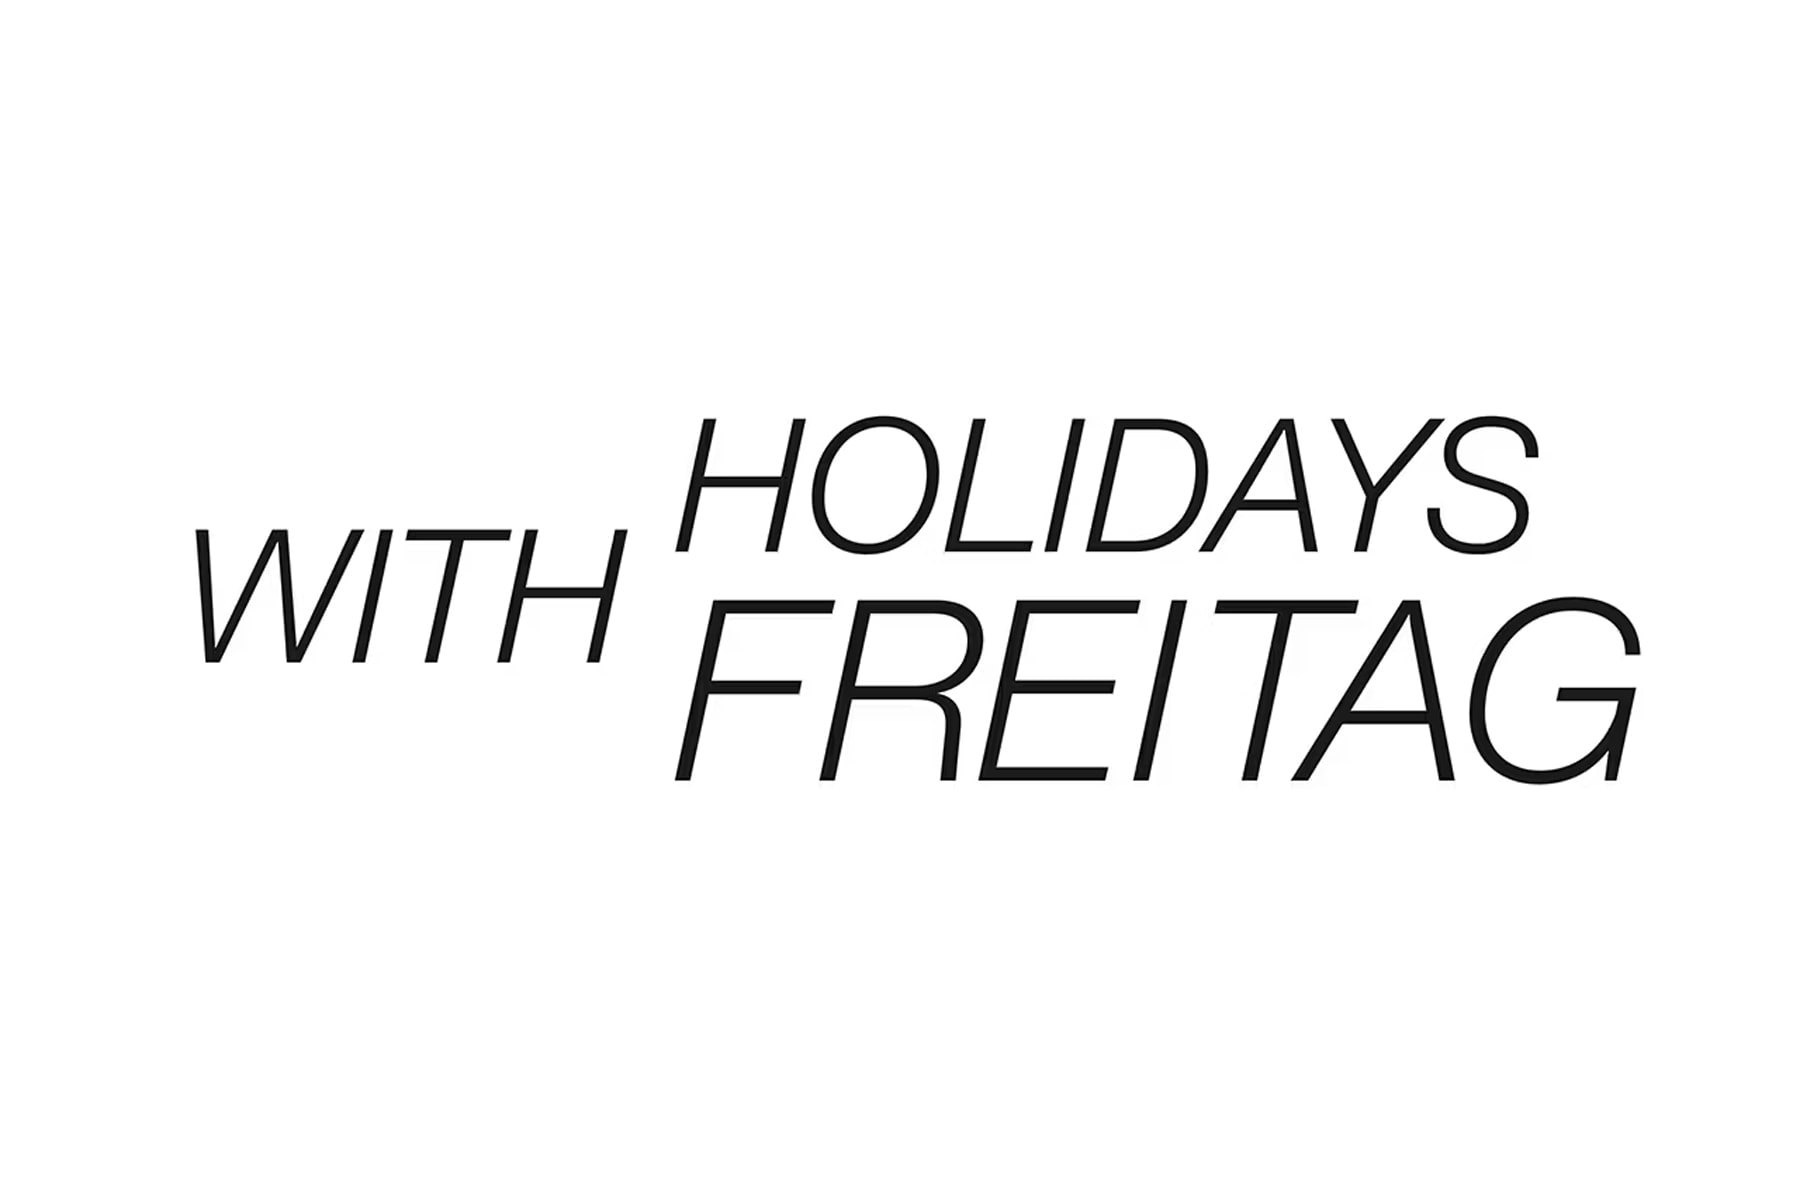 COMME des GARÇONS 攜手 FREITAG 打造全新聯名系列「Holidays with FREITAG」